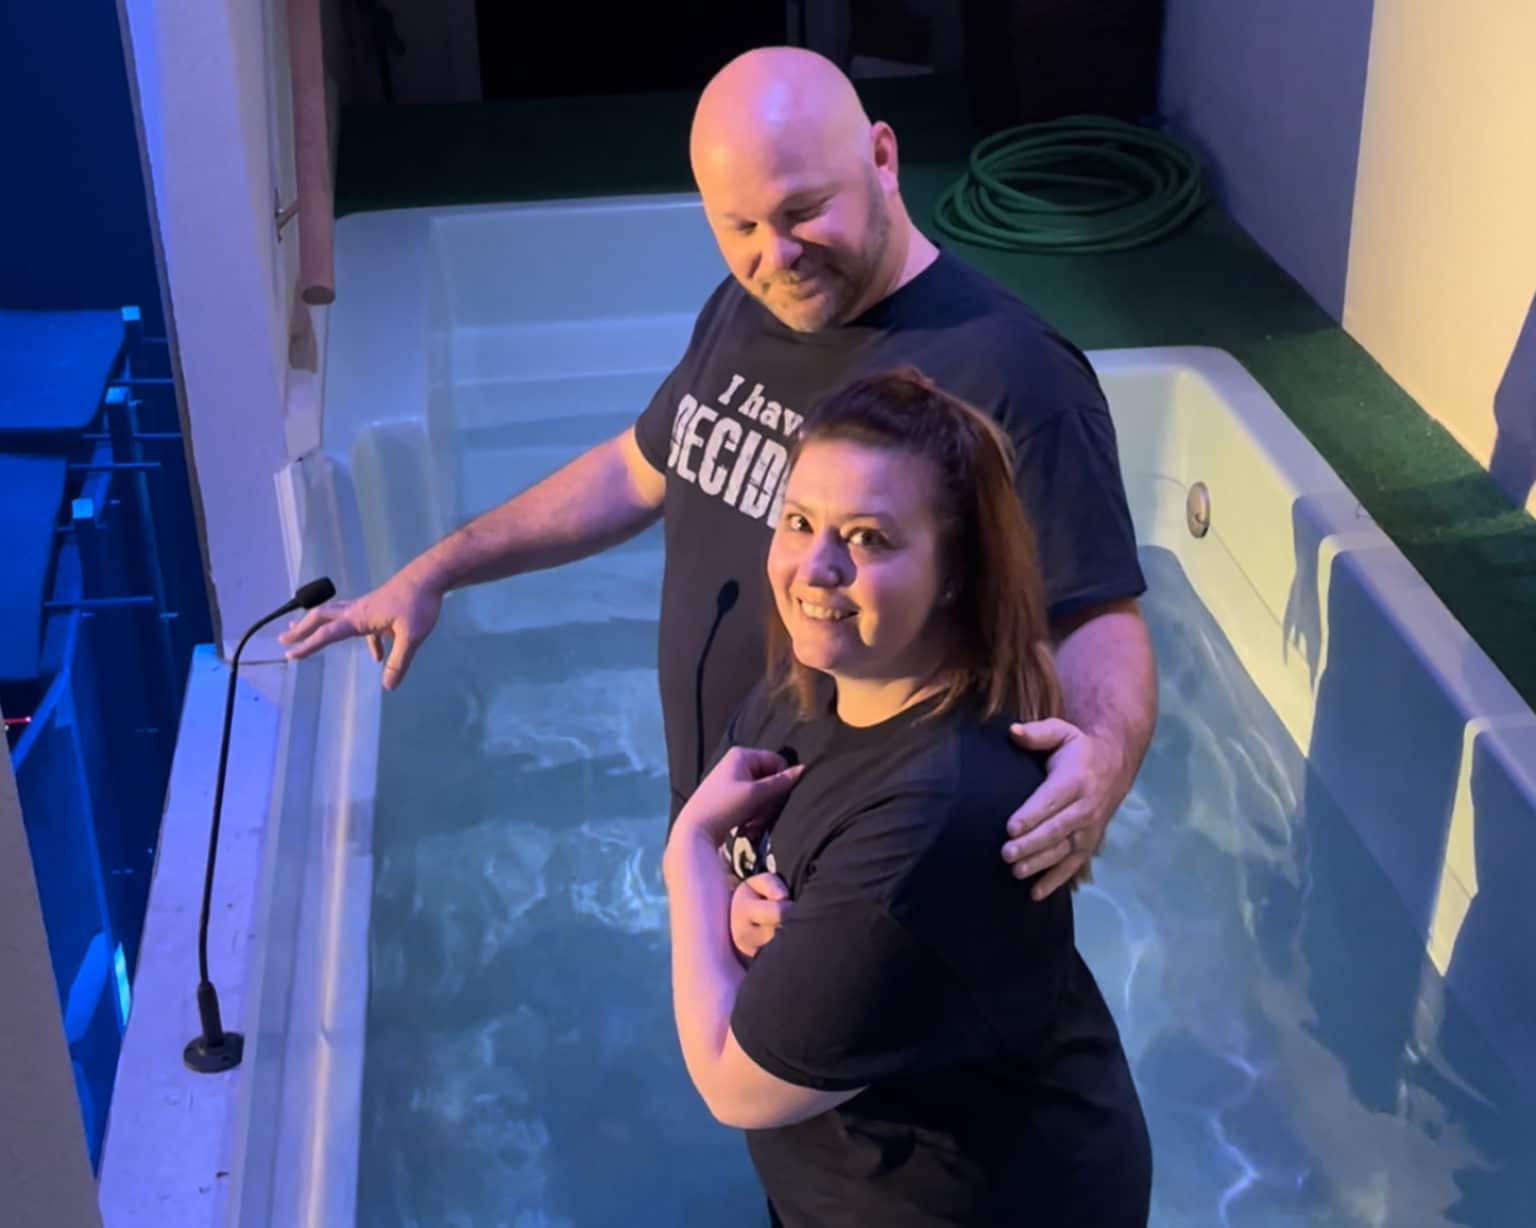 UK resident baptized Weatherford